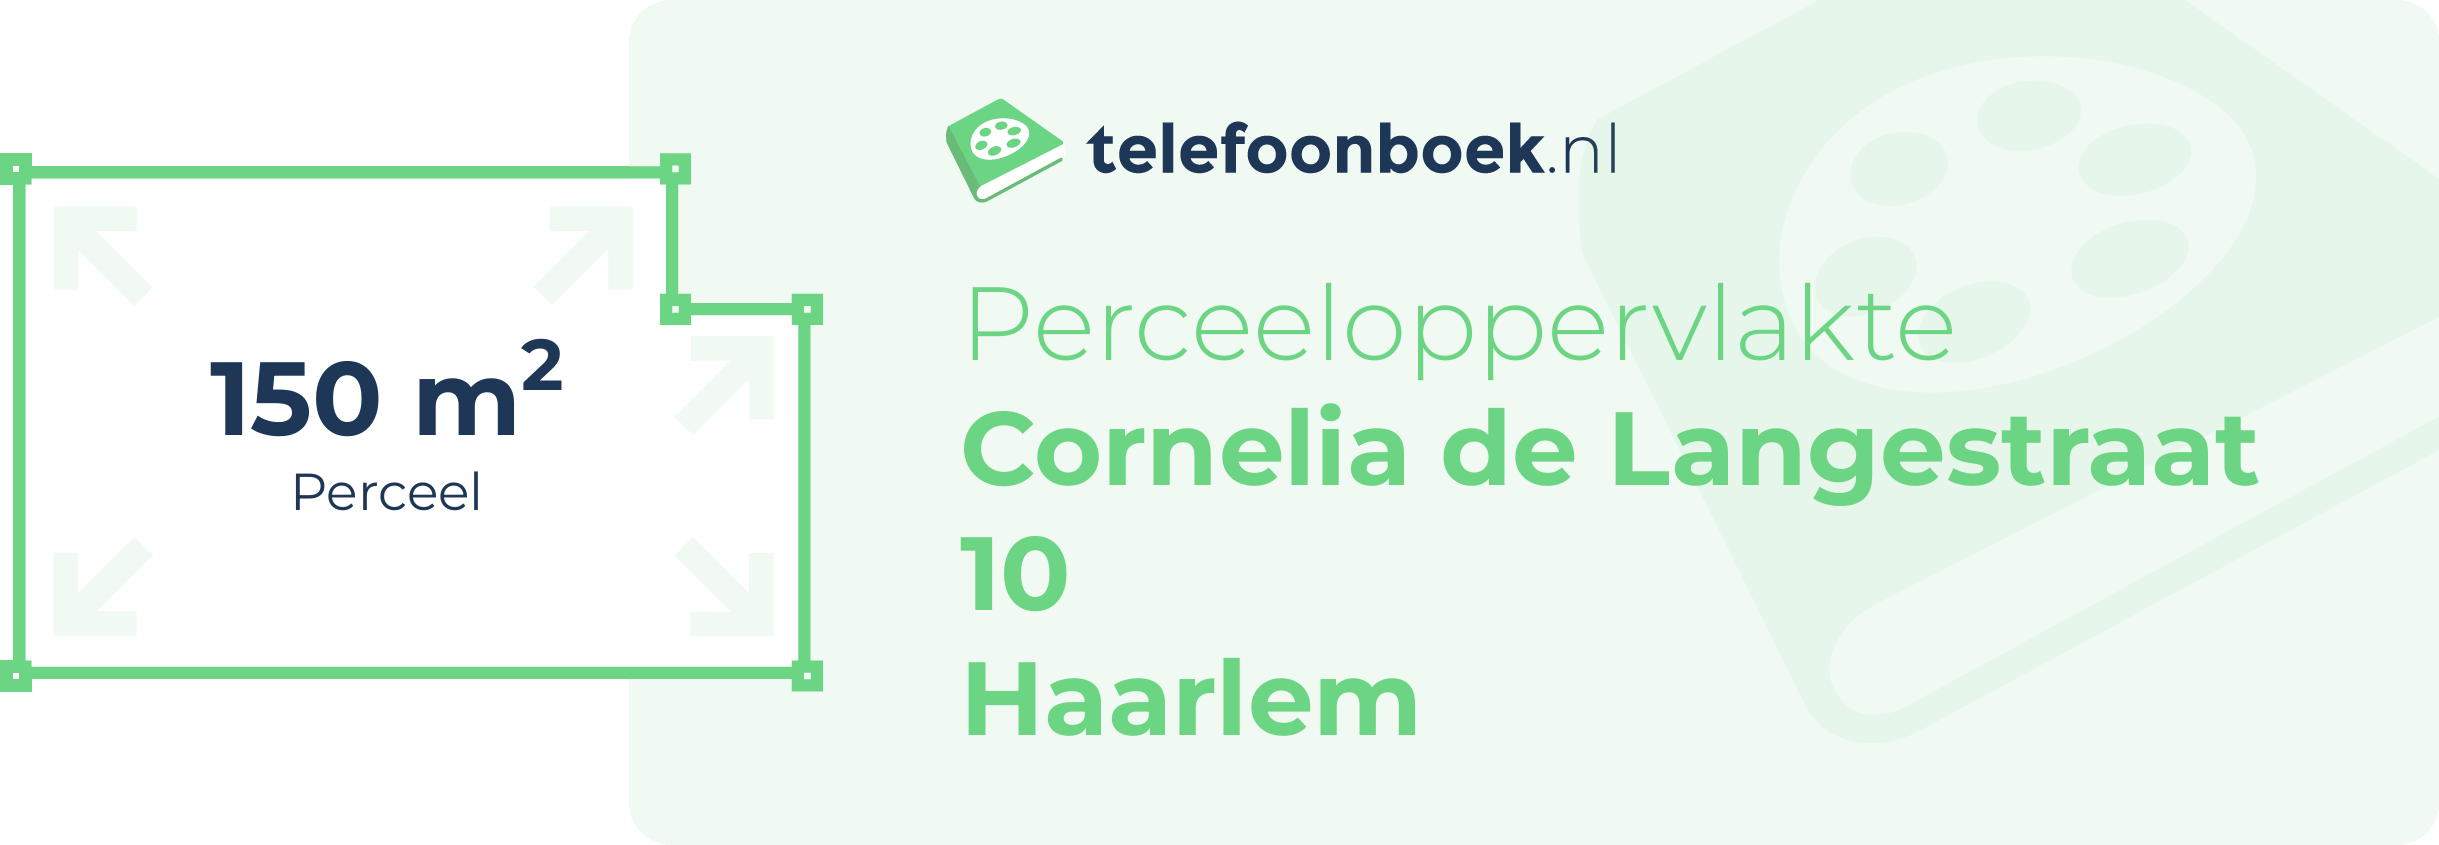 Perceeloppervlakte Cornelia De Langestraat 10 Haarlem